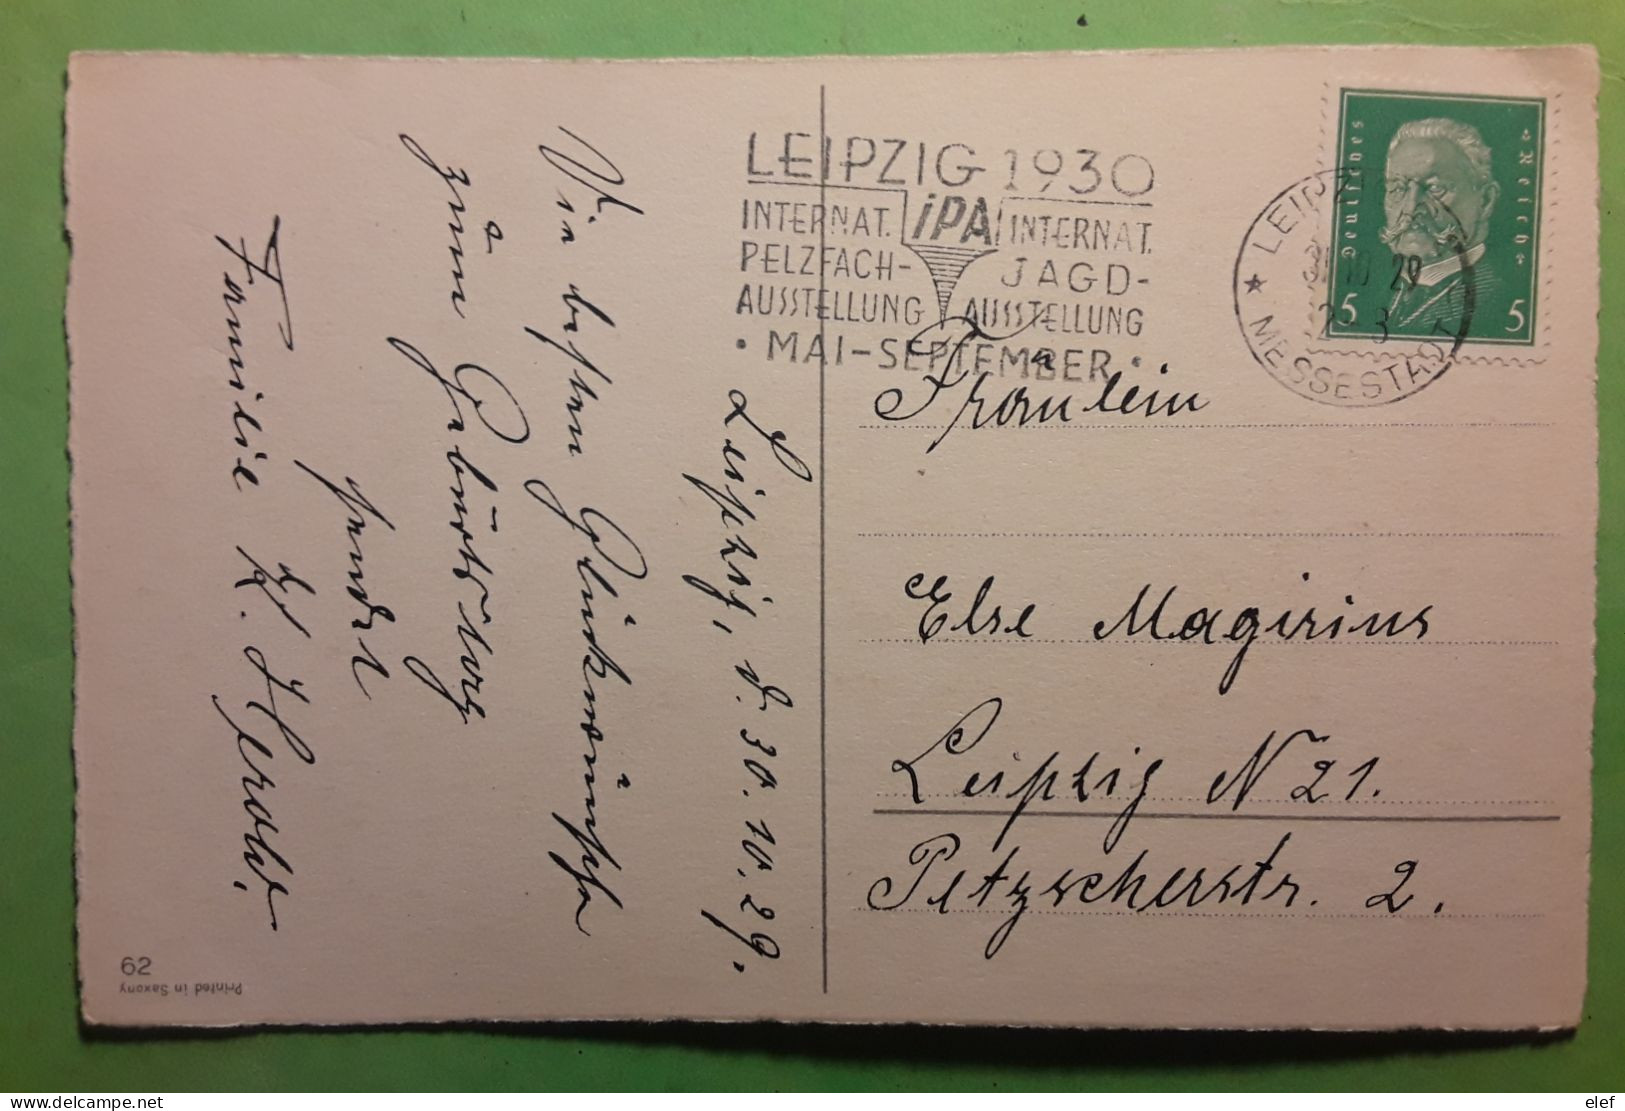 Flamme Chasse   IPA Internat PELZFACH JAGD AUSTELLUNG LEIPZIG 1930,Deutsches Reich Postkarte Gluckwunsch Z Geburtstage - Shooting (Weapons)